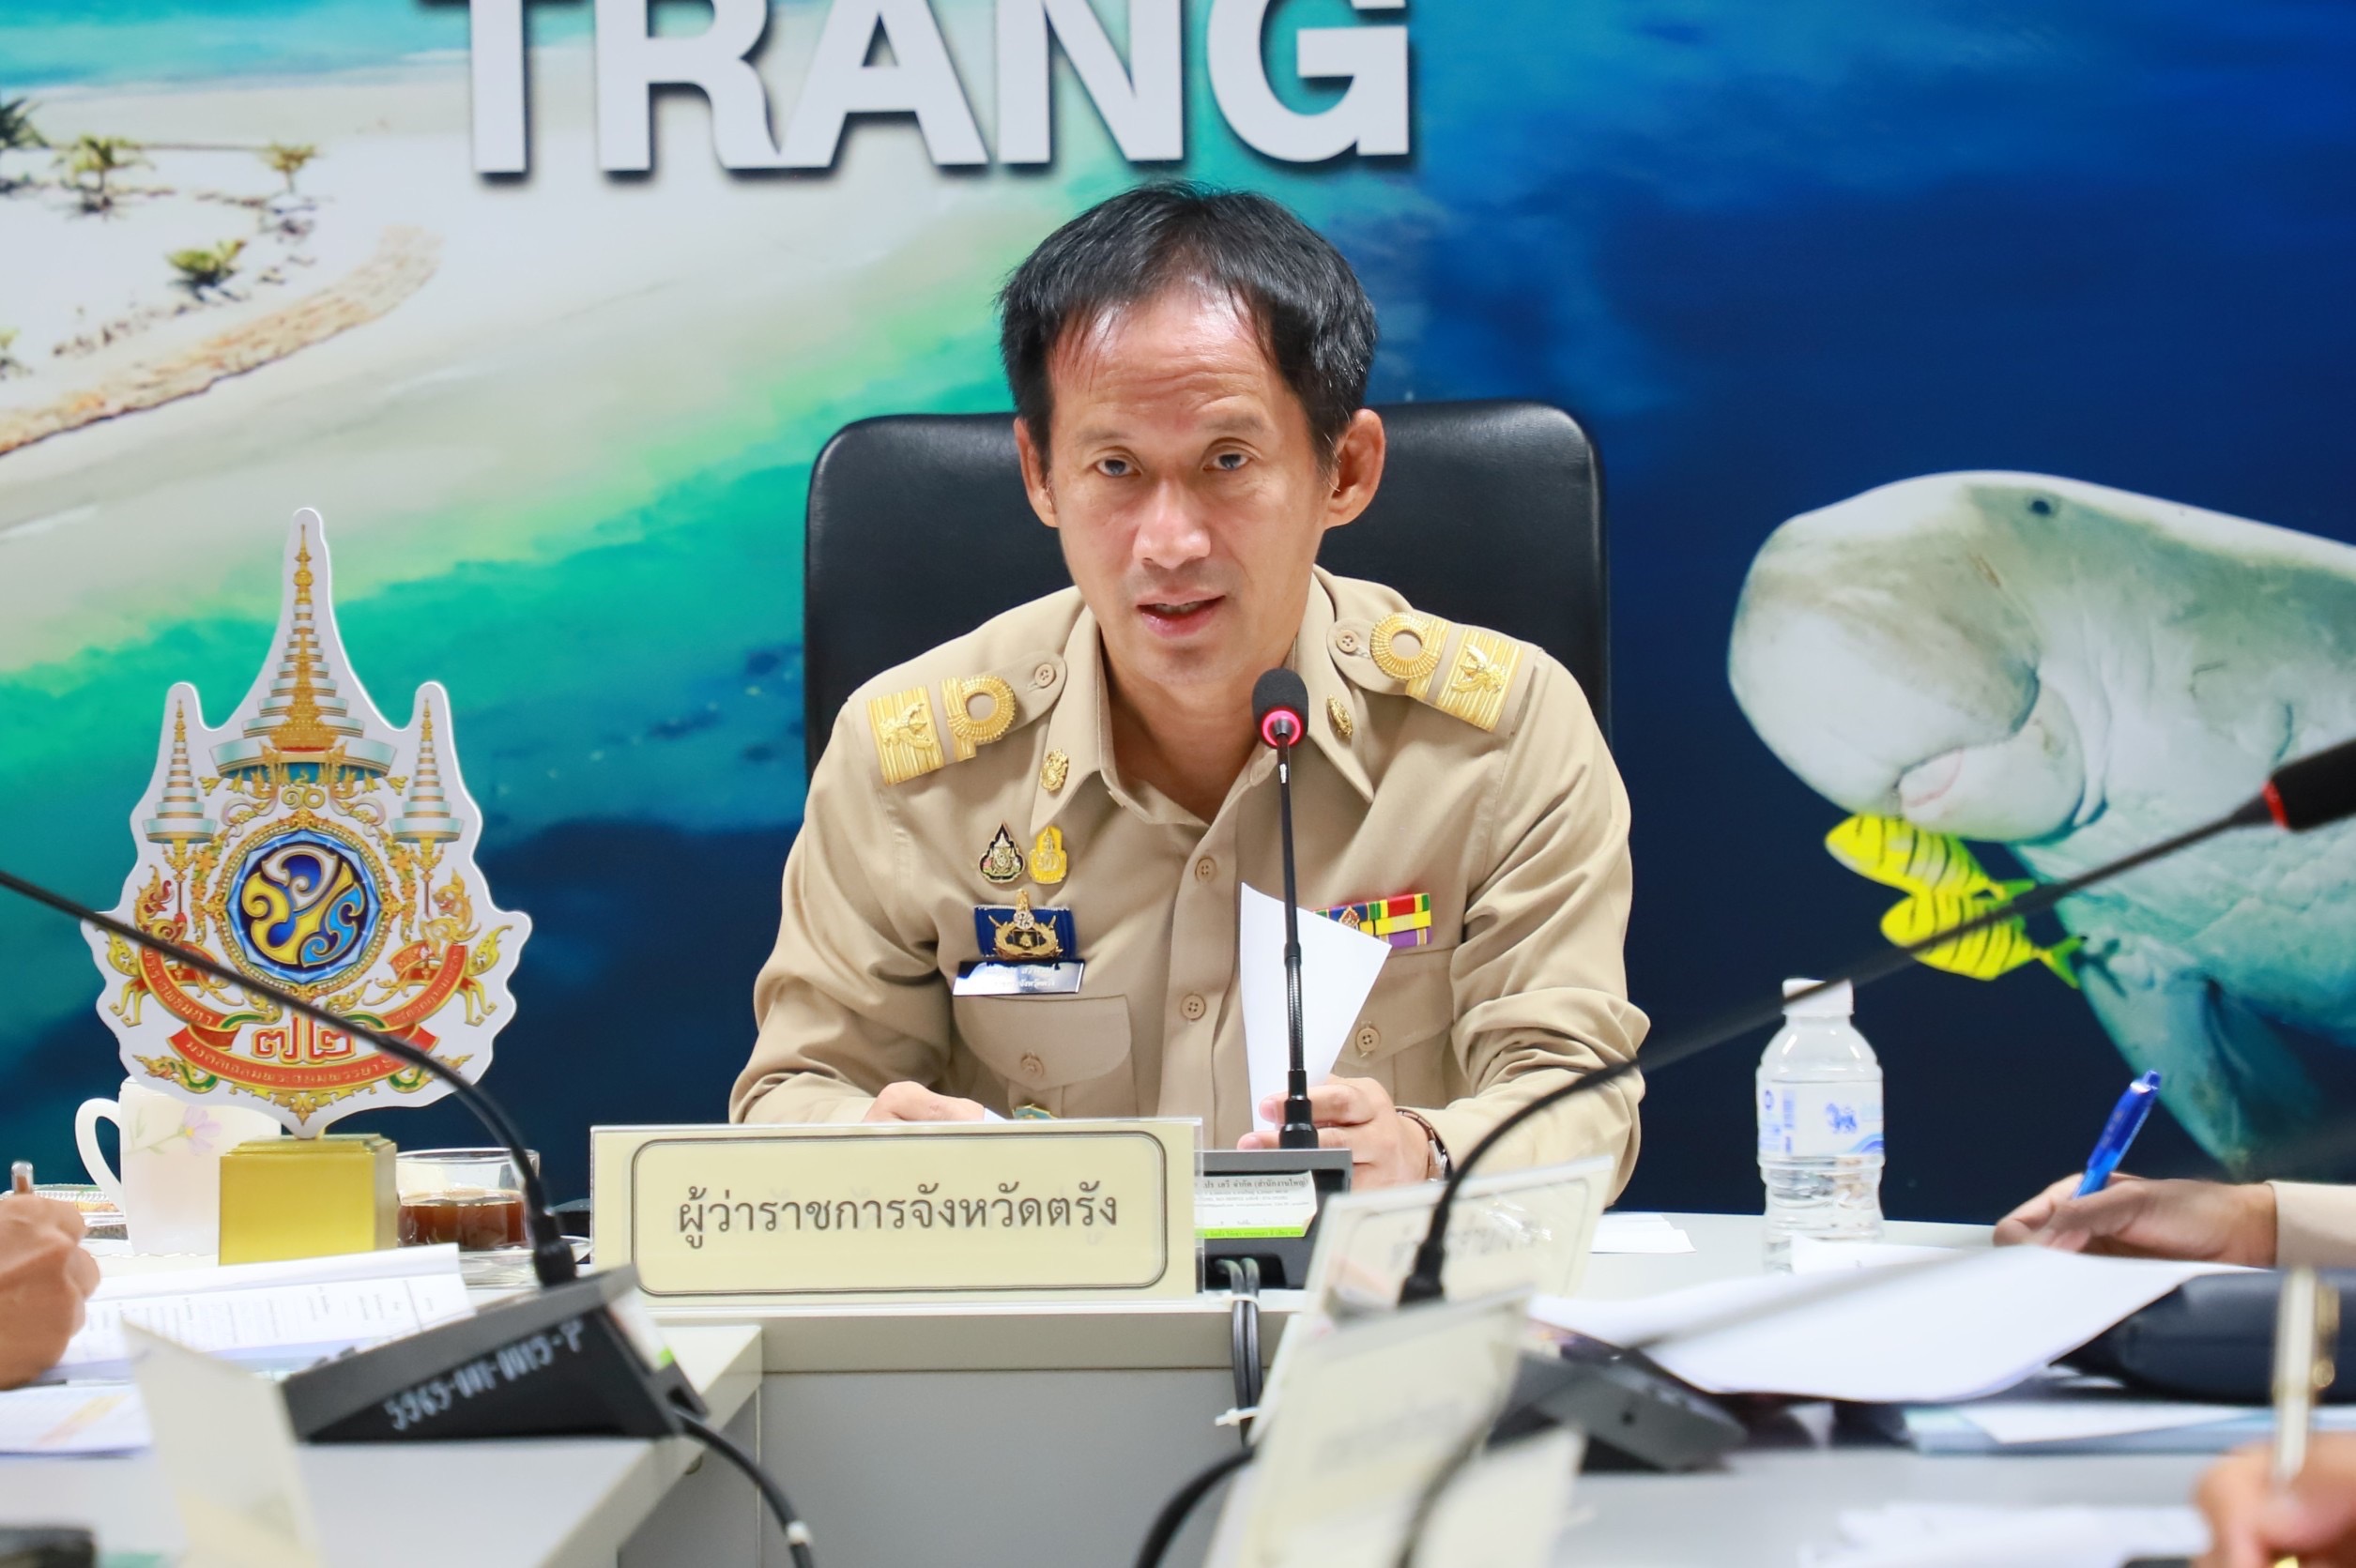 จังหวัดตรัง ประชุมหัวหน้าส่วนราชการประจำจังหวัดสังกัดกระทรวงมหาดไทยและนายอำเภอ ประจำเดือนเมษายน 2567